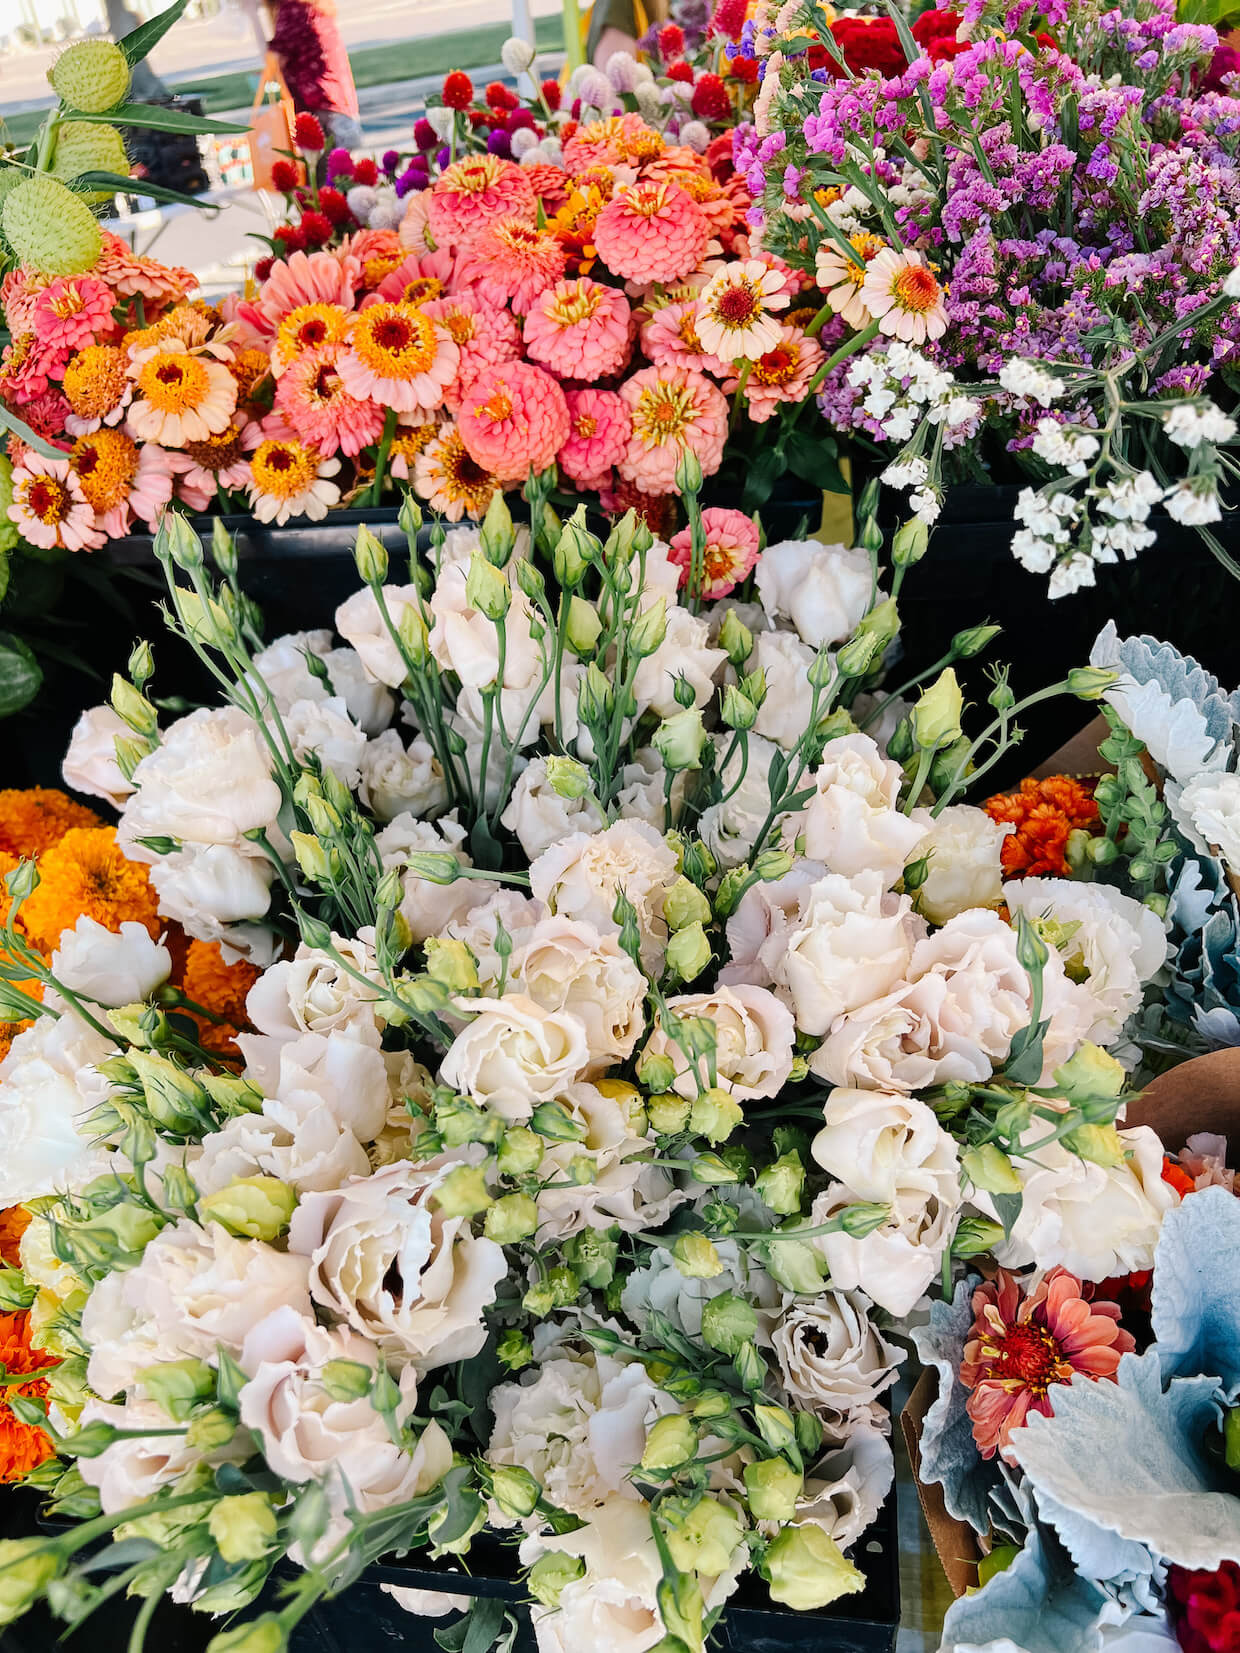 farmers market flowers in boise, idaho - M Loves M @marmar